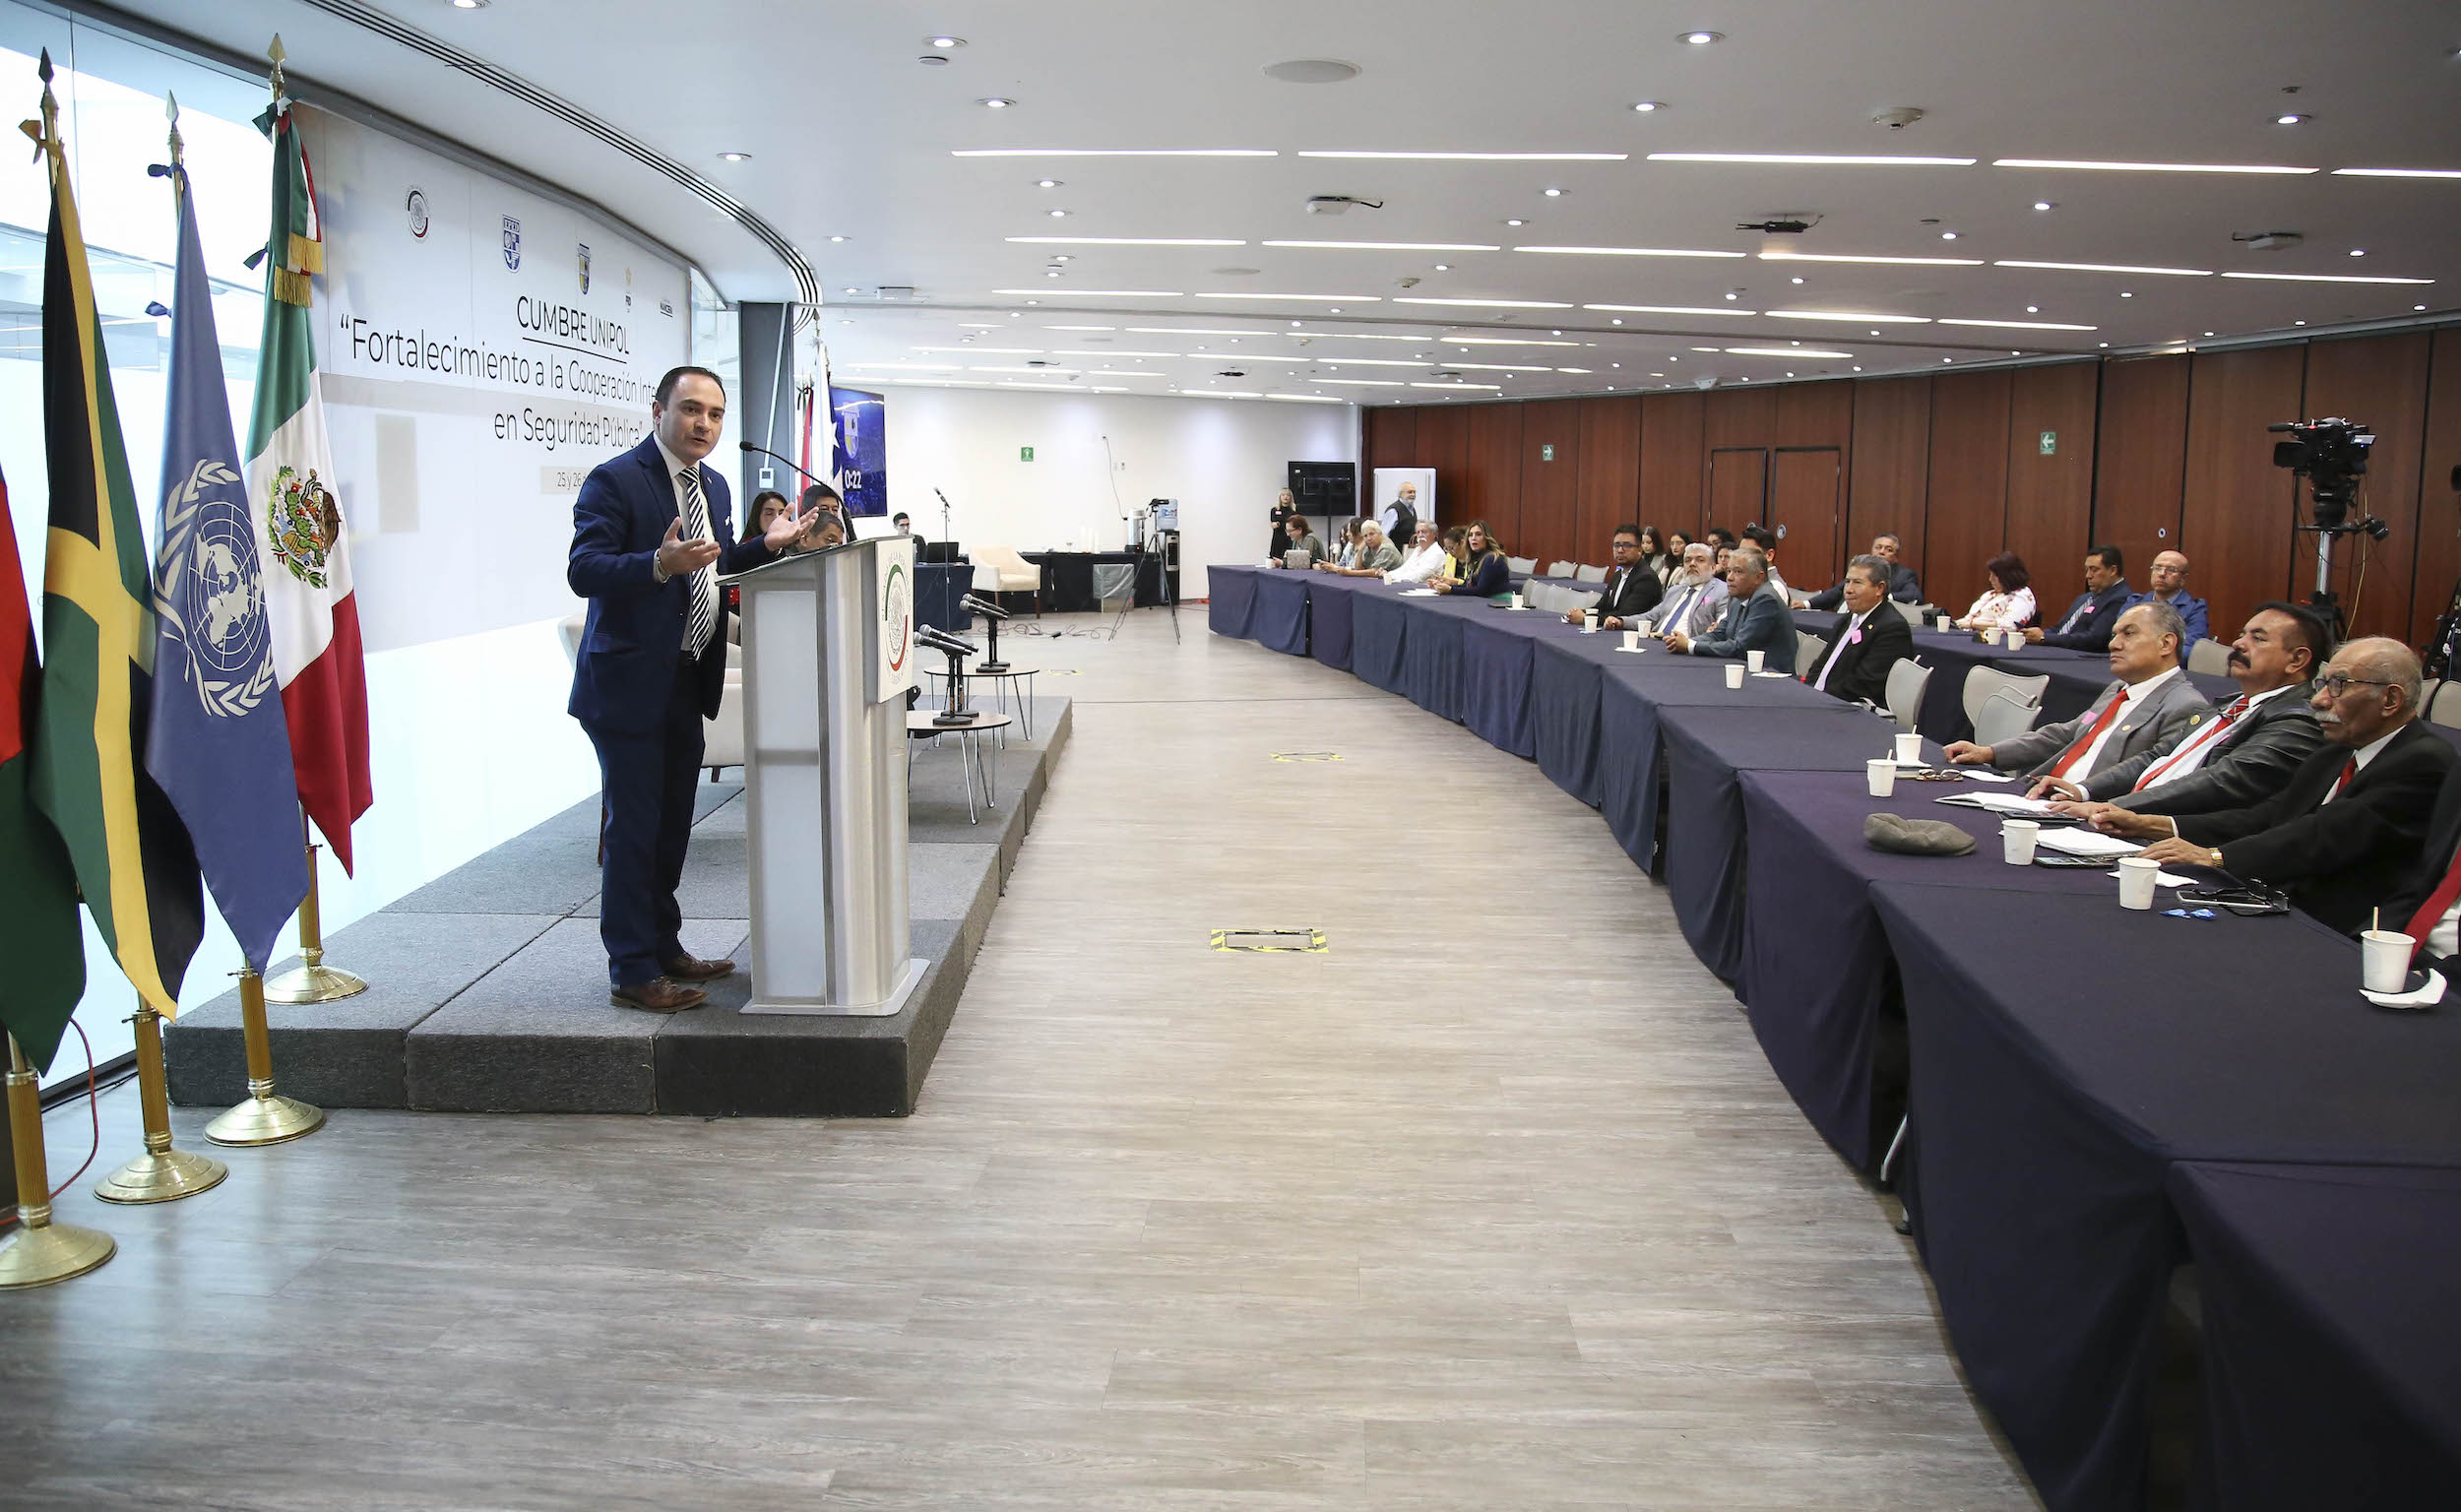 Cumbre UNIPOL “Fortalecimiento a la Cooperación Internacional en Seguridad Pública”